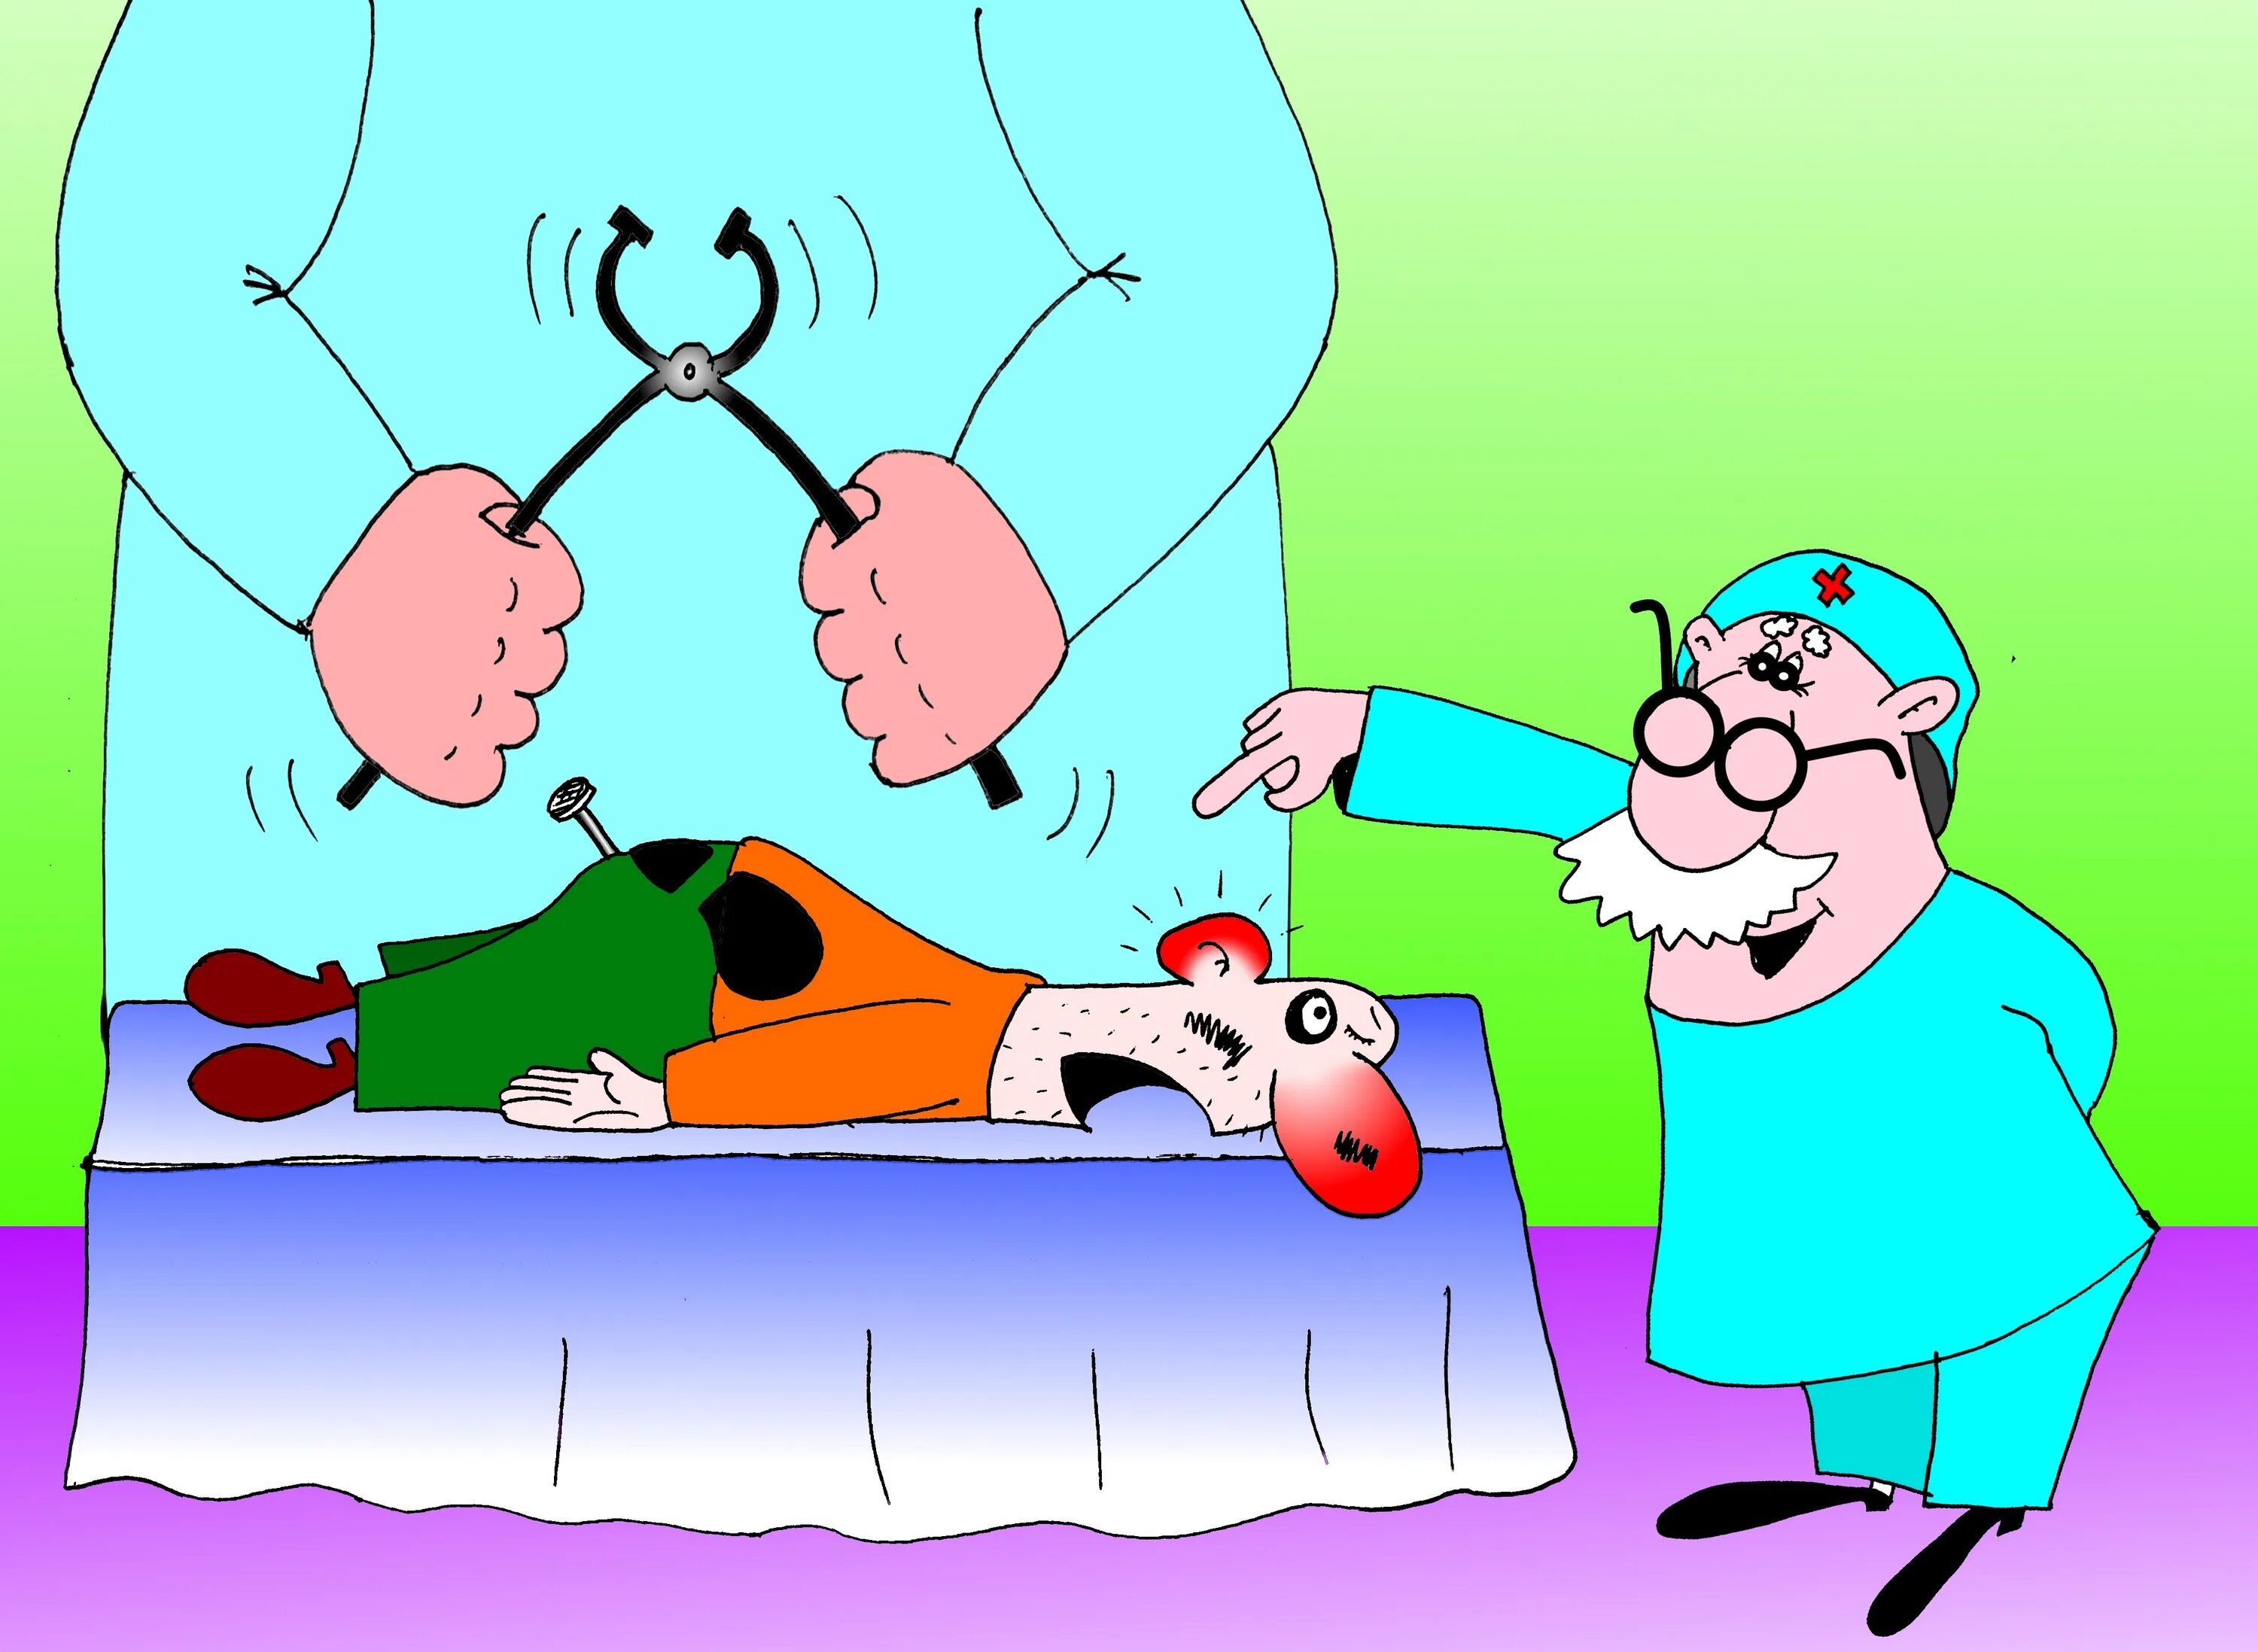 Картинка смешная больным. Смешные карикатуры про медицину. Врач и пациент карикатура. Хирург карикатура. Смешные шутки про врачей.